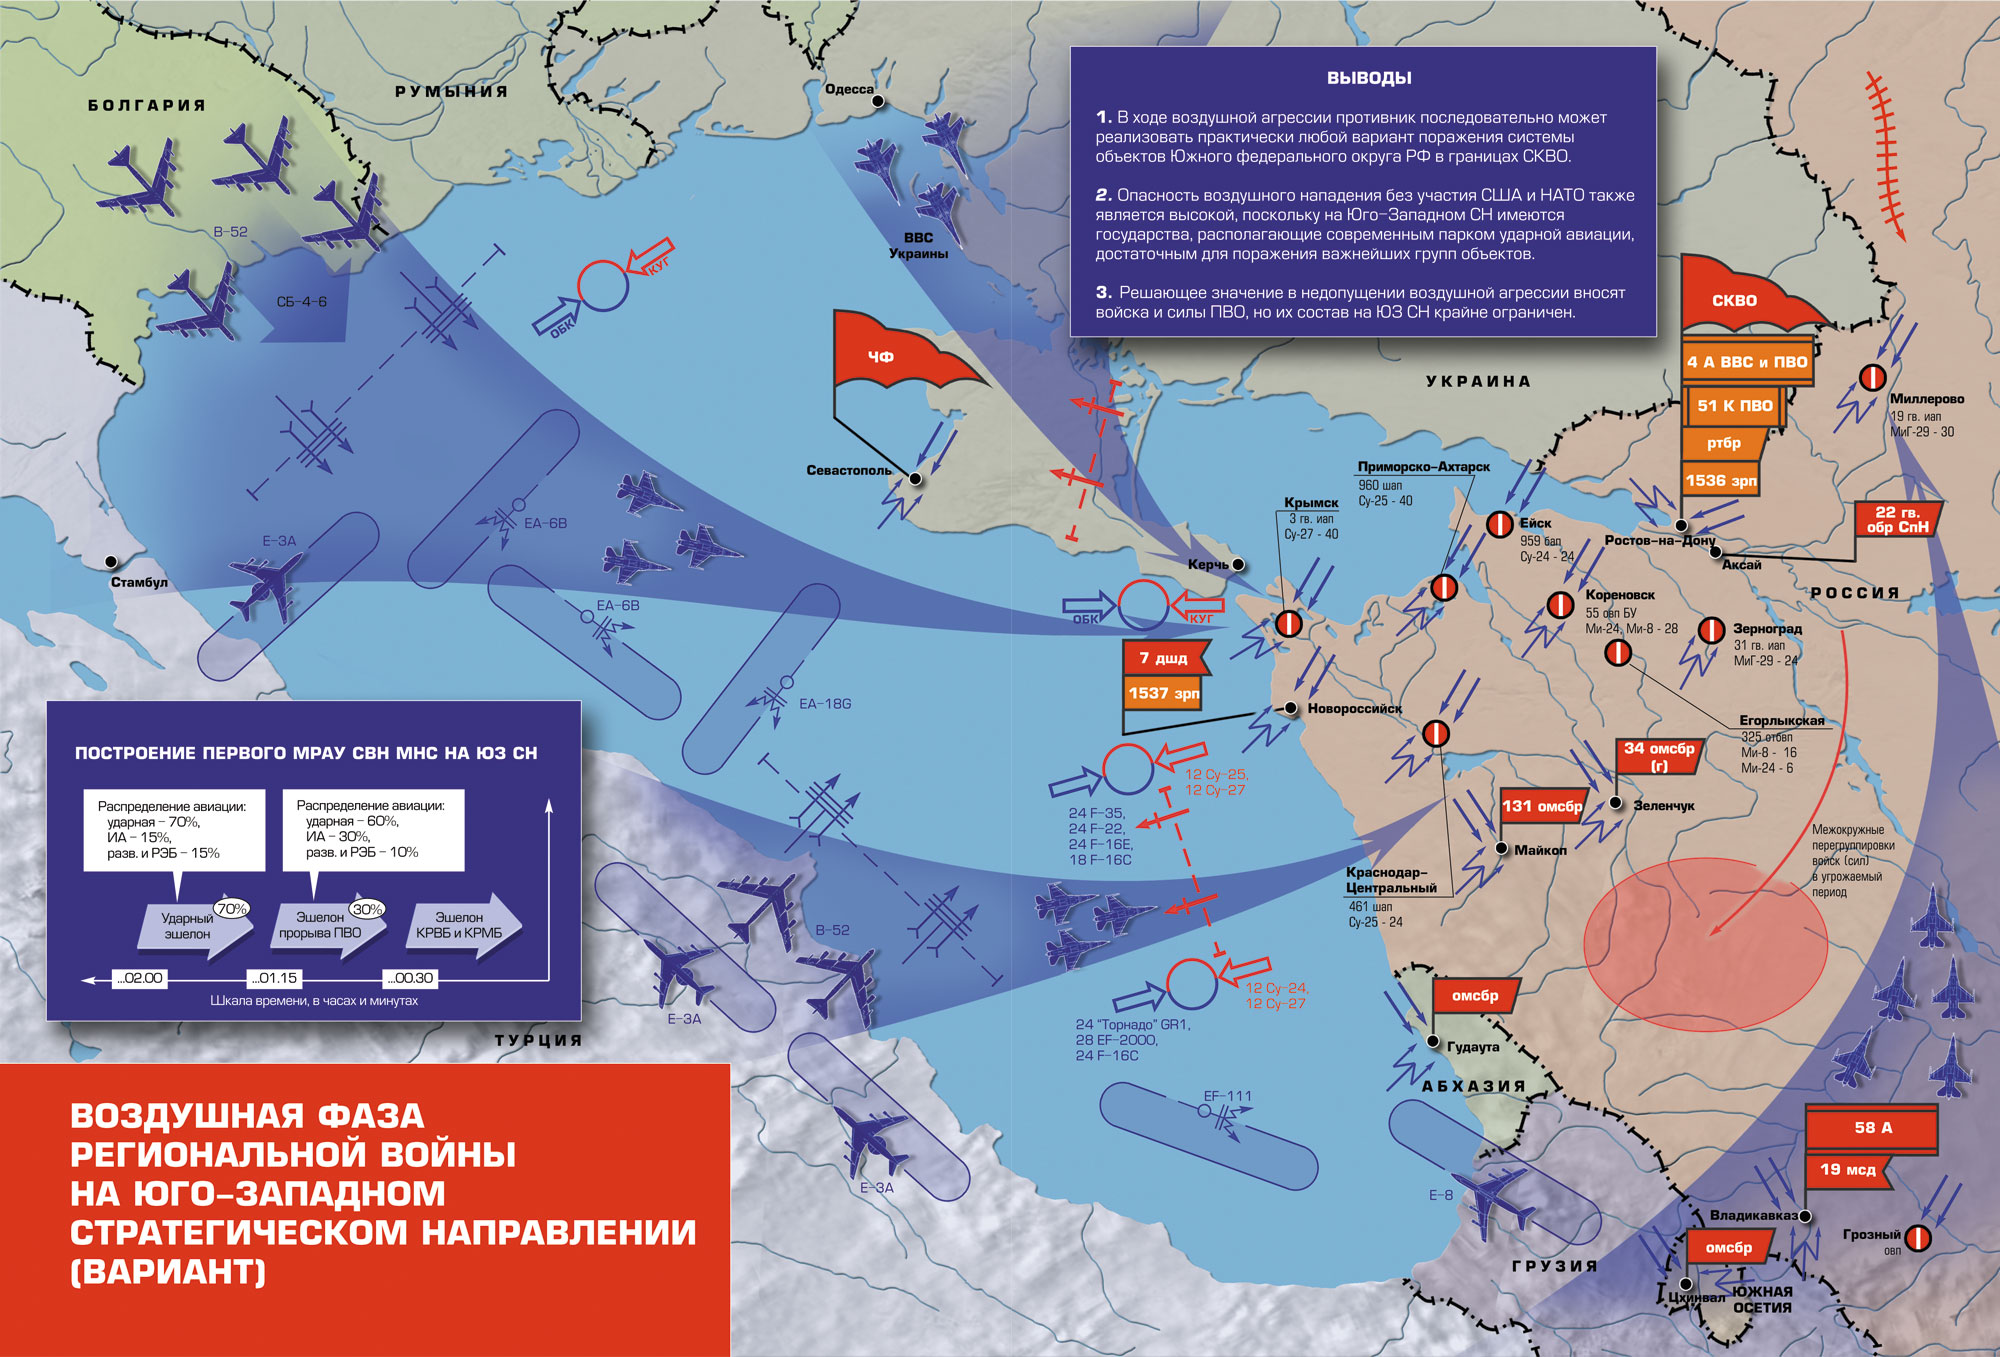 Западное направление украина. ПВО НАТО на карте. Военные стратегические направления. Юго-Западное стратегическое направление. Западное стратегическое направление России.